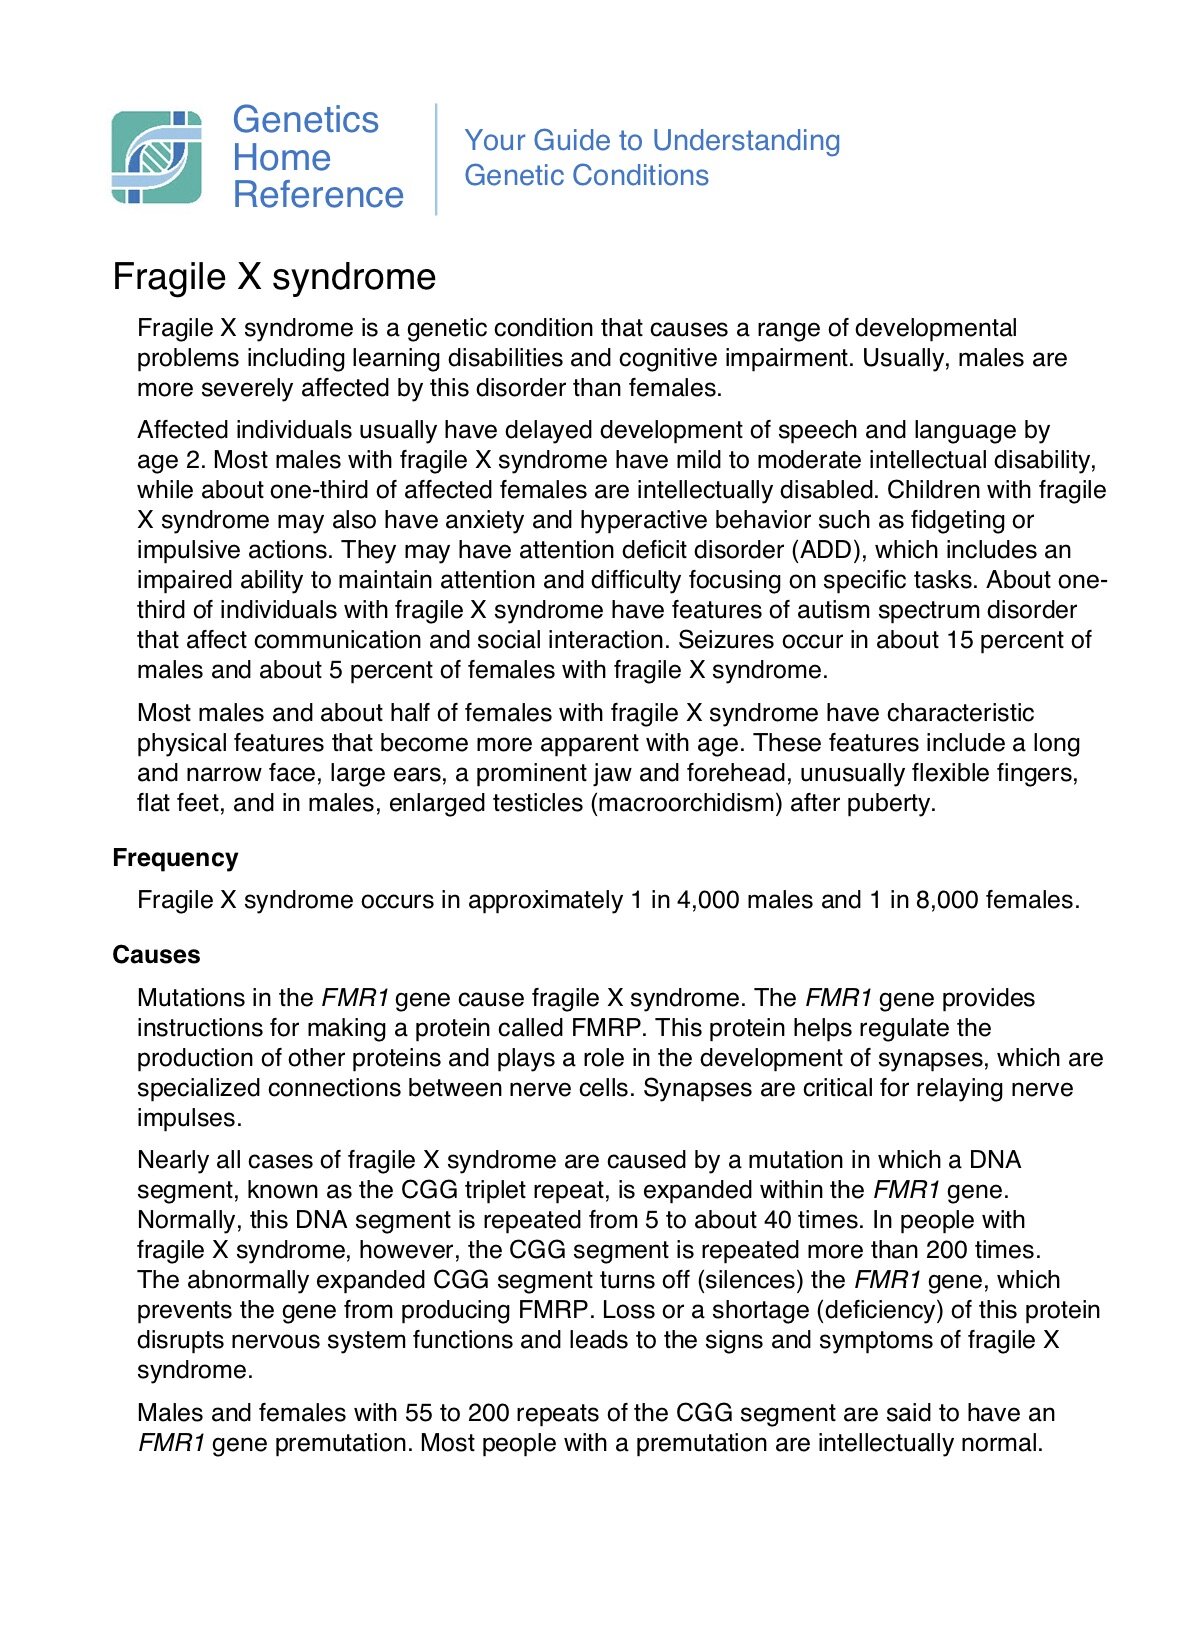 fragile-x-syndrome1.jpg